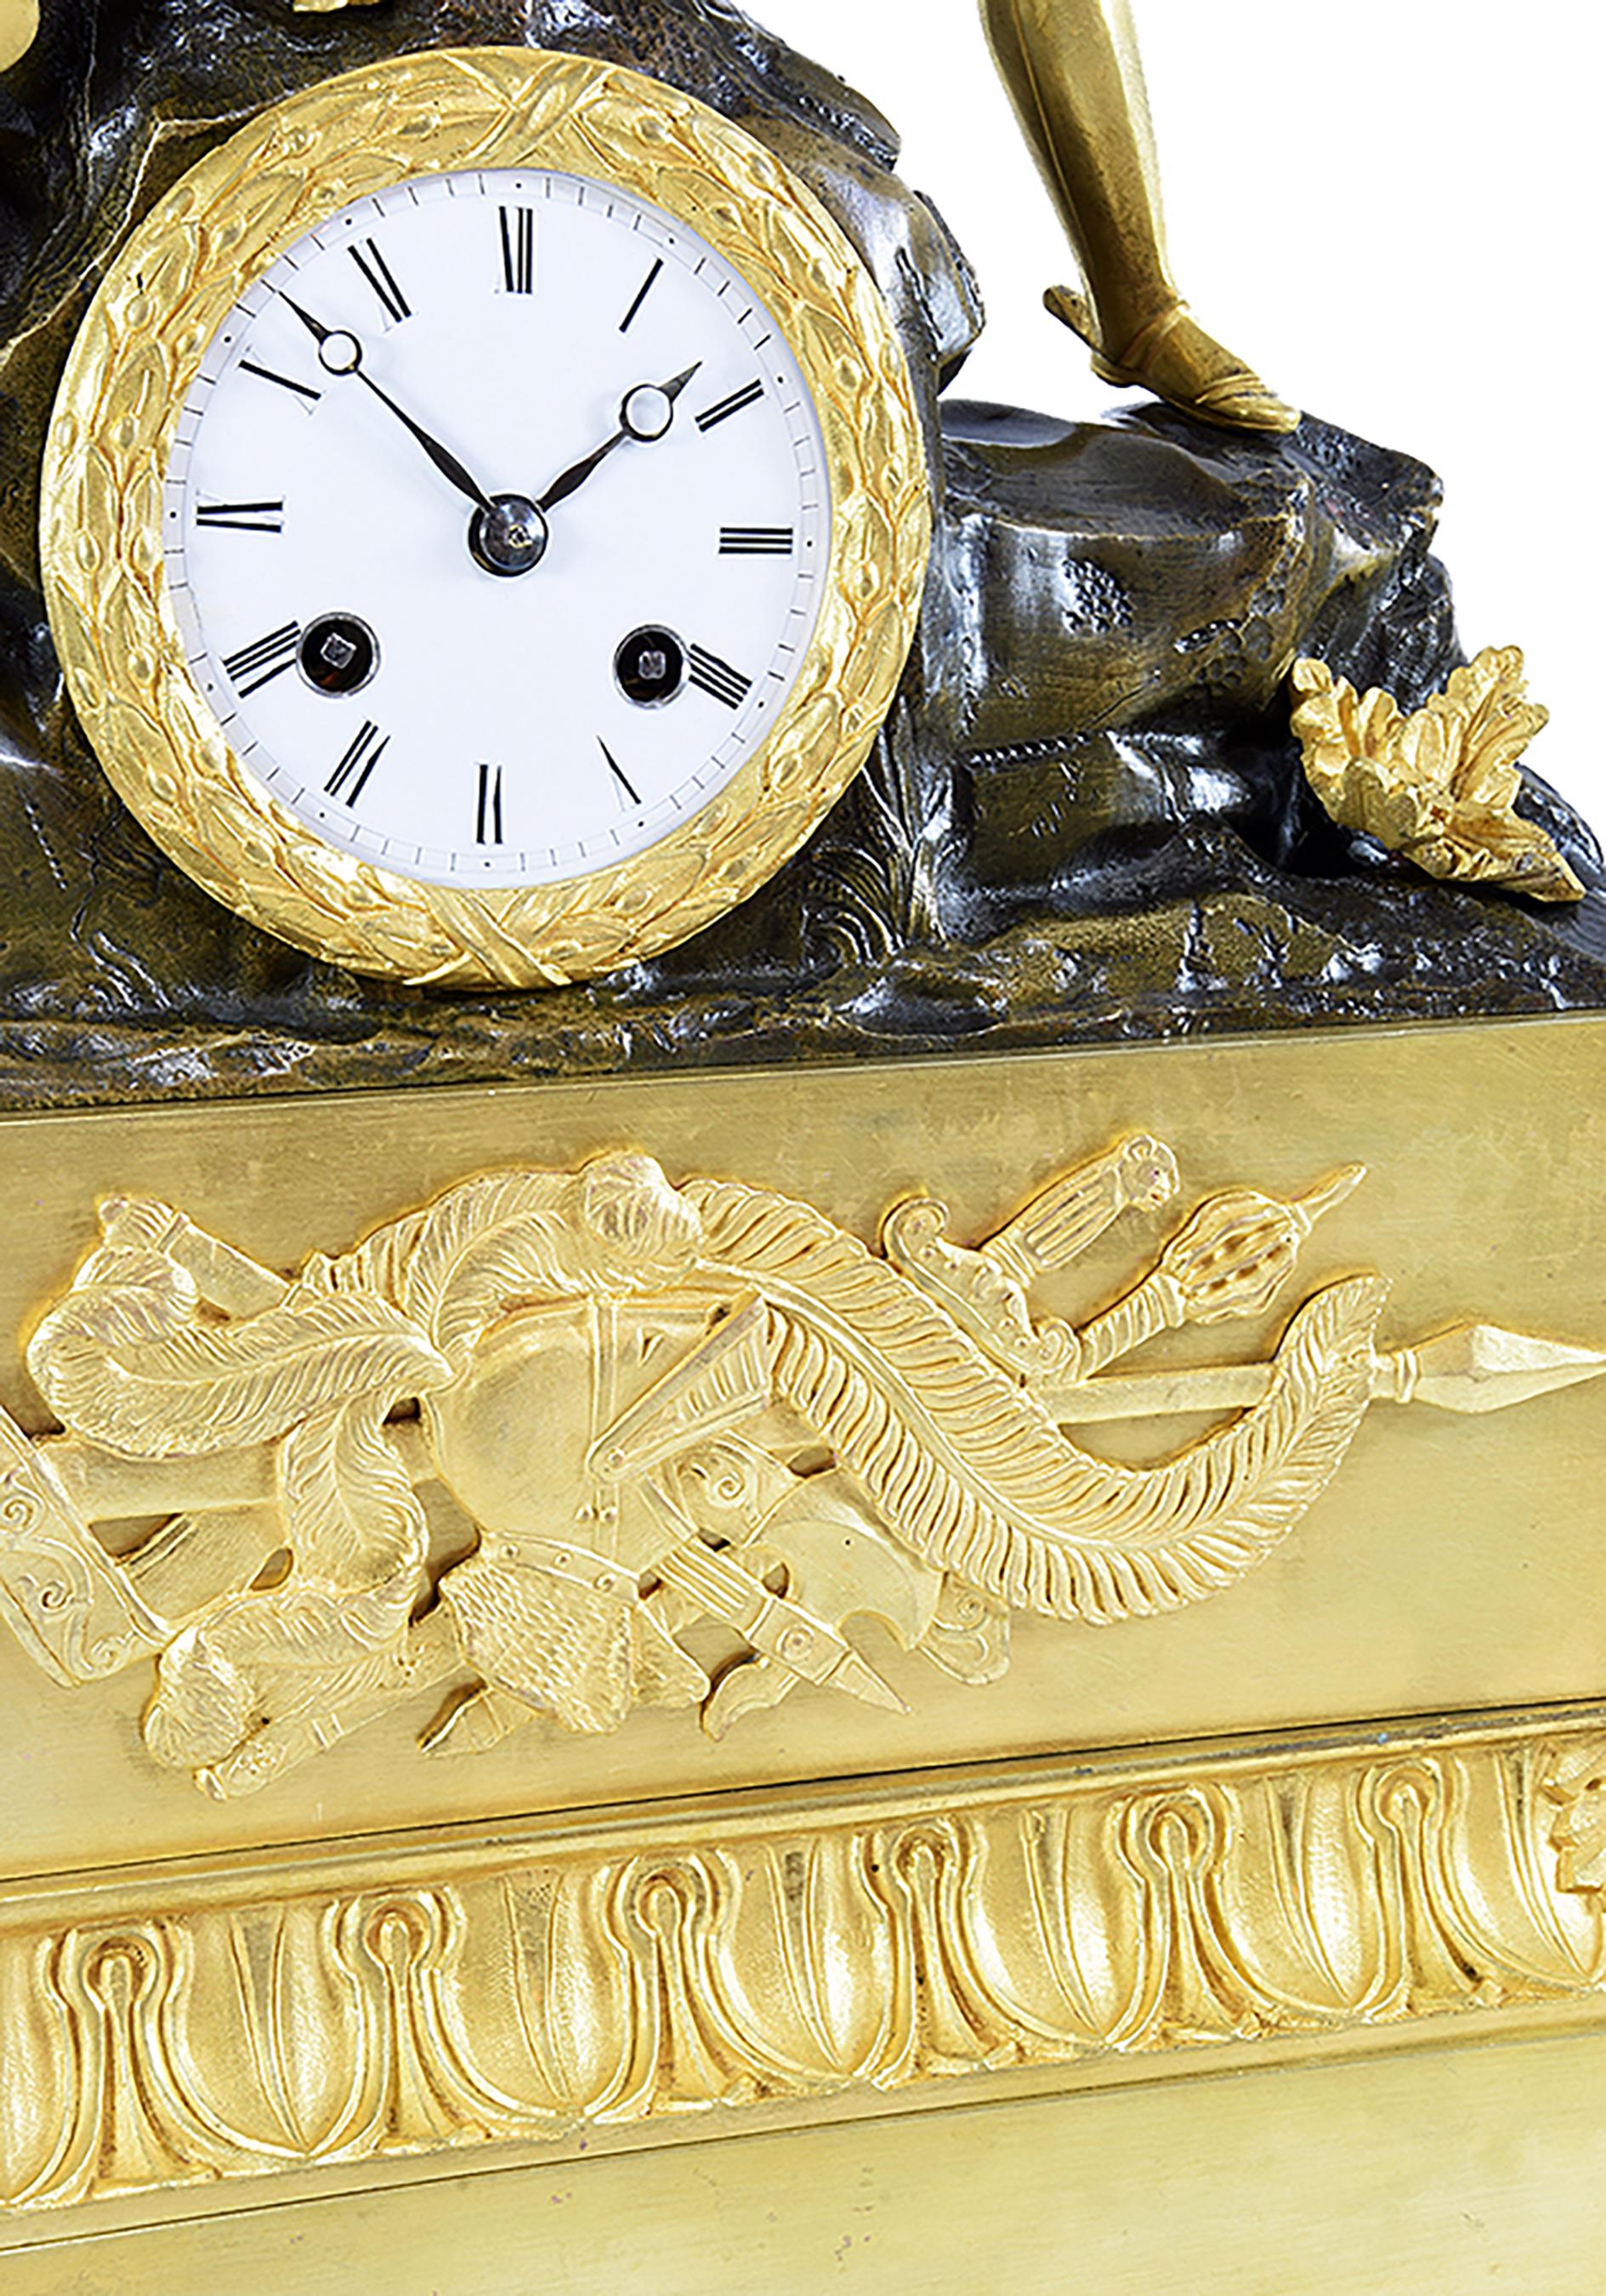 Prächtige und große Uhr, sehr dekorativ, sehr ungewöhnlich zu der Zeit. Sie besteht aus vergoldeter Bronze mit Quecksilber und patinierter Bronze. Es zeigt eine erhabene Kriegsszene mit zwei Rittern, von denen einer verwundet ist und Pierre Terrail,